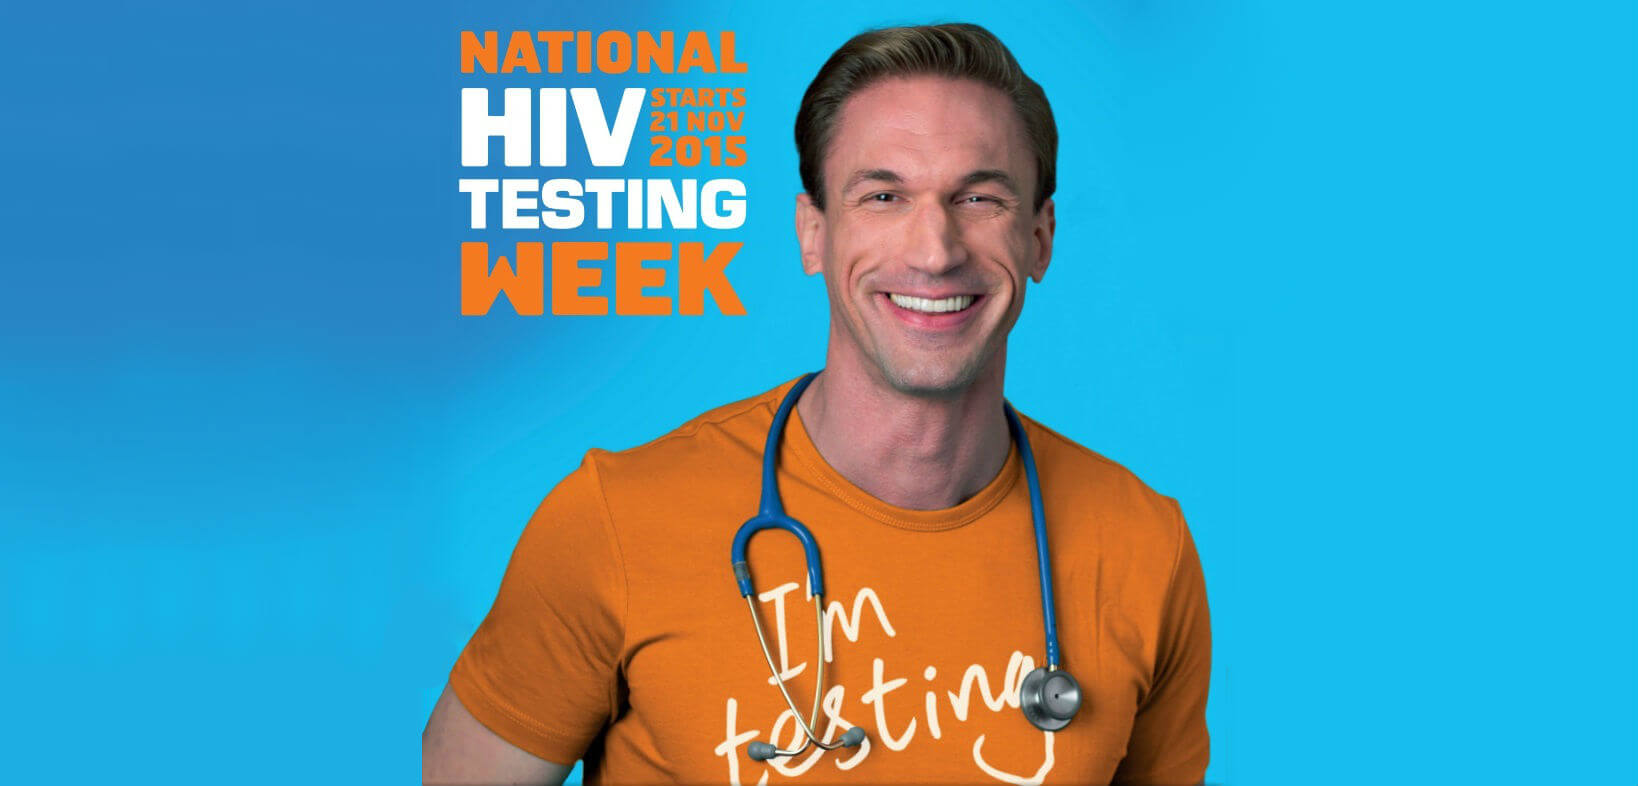 Dr_Christian_Jensen_test_HIV_prevenzione_HIV